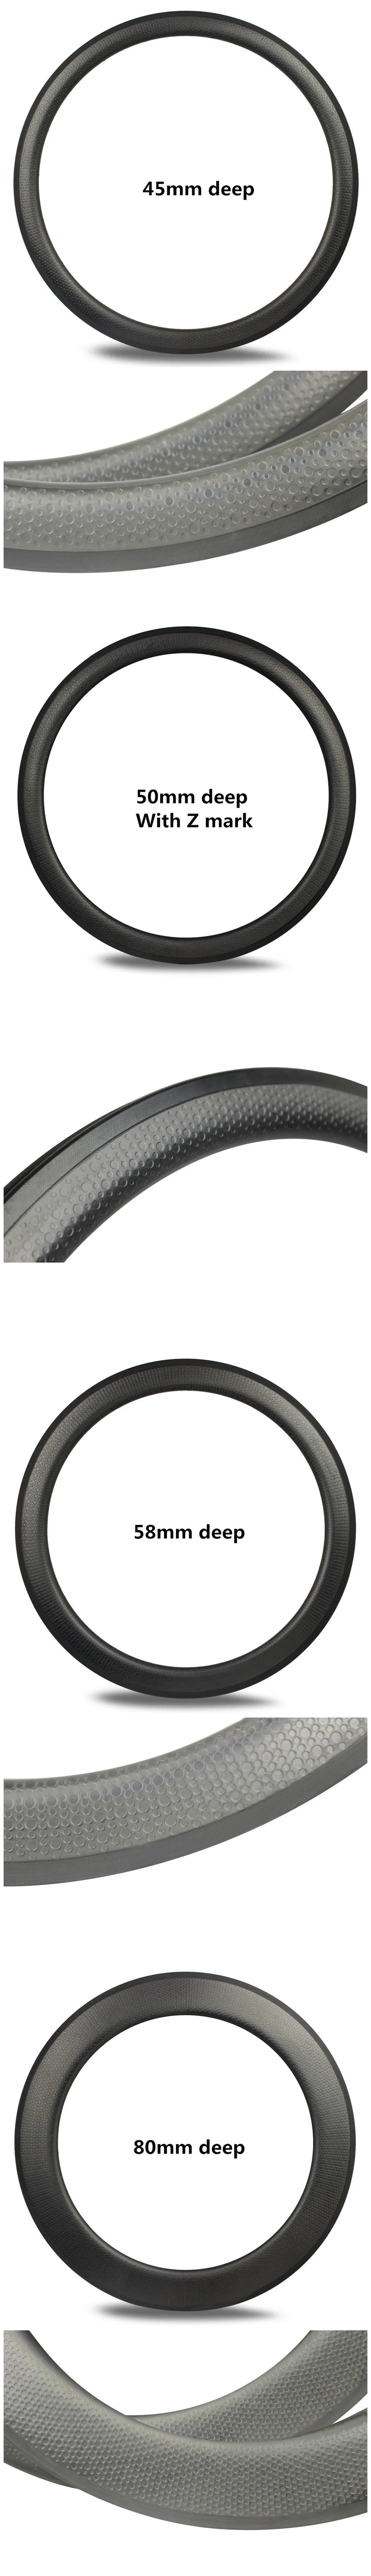 Высокая TG карбоновая ямочка диски 80 мм Глубина базальтовая тормозная поверхность Golf Surfce карбоновые диски для шоссейного велосипеда или TT велосипеда